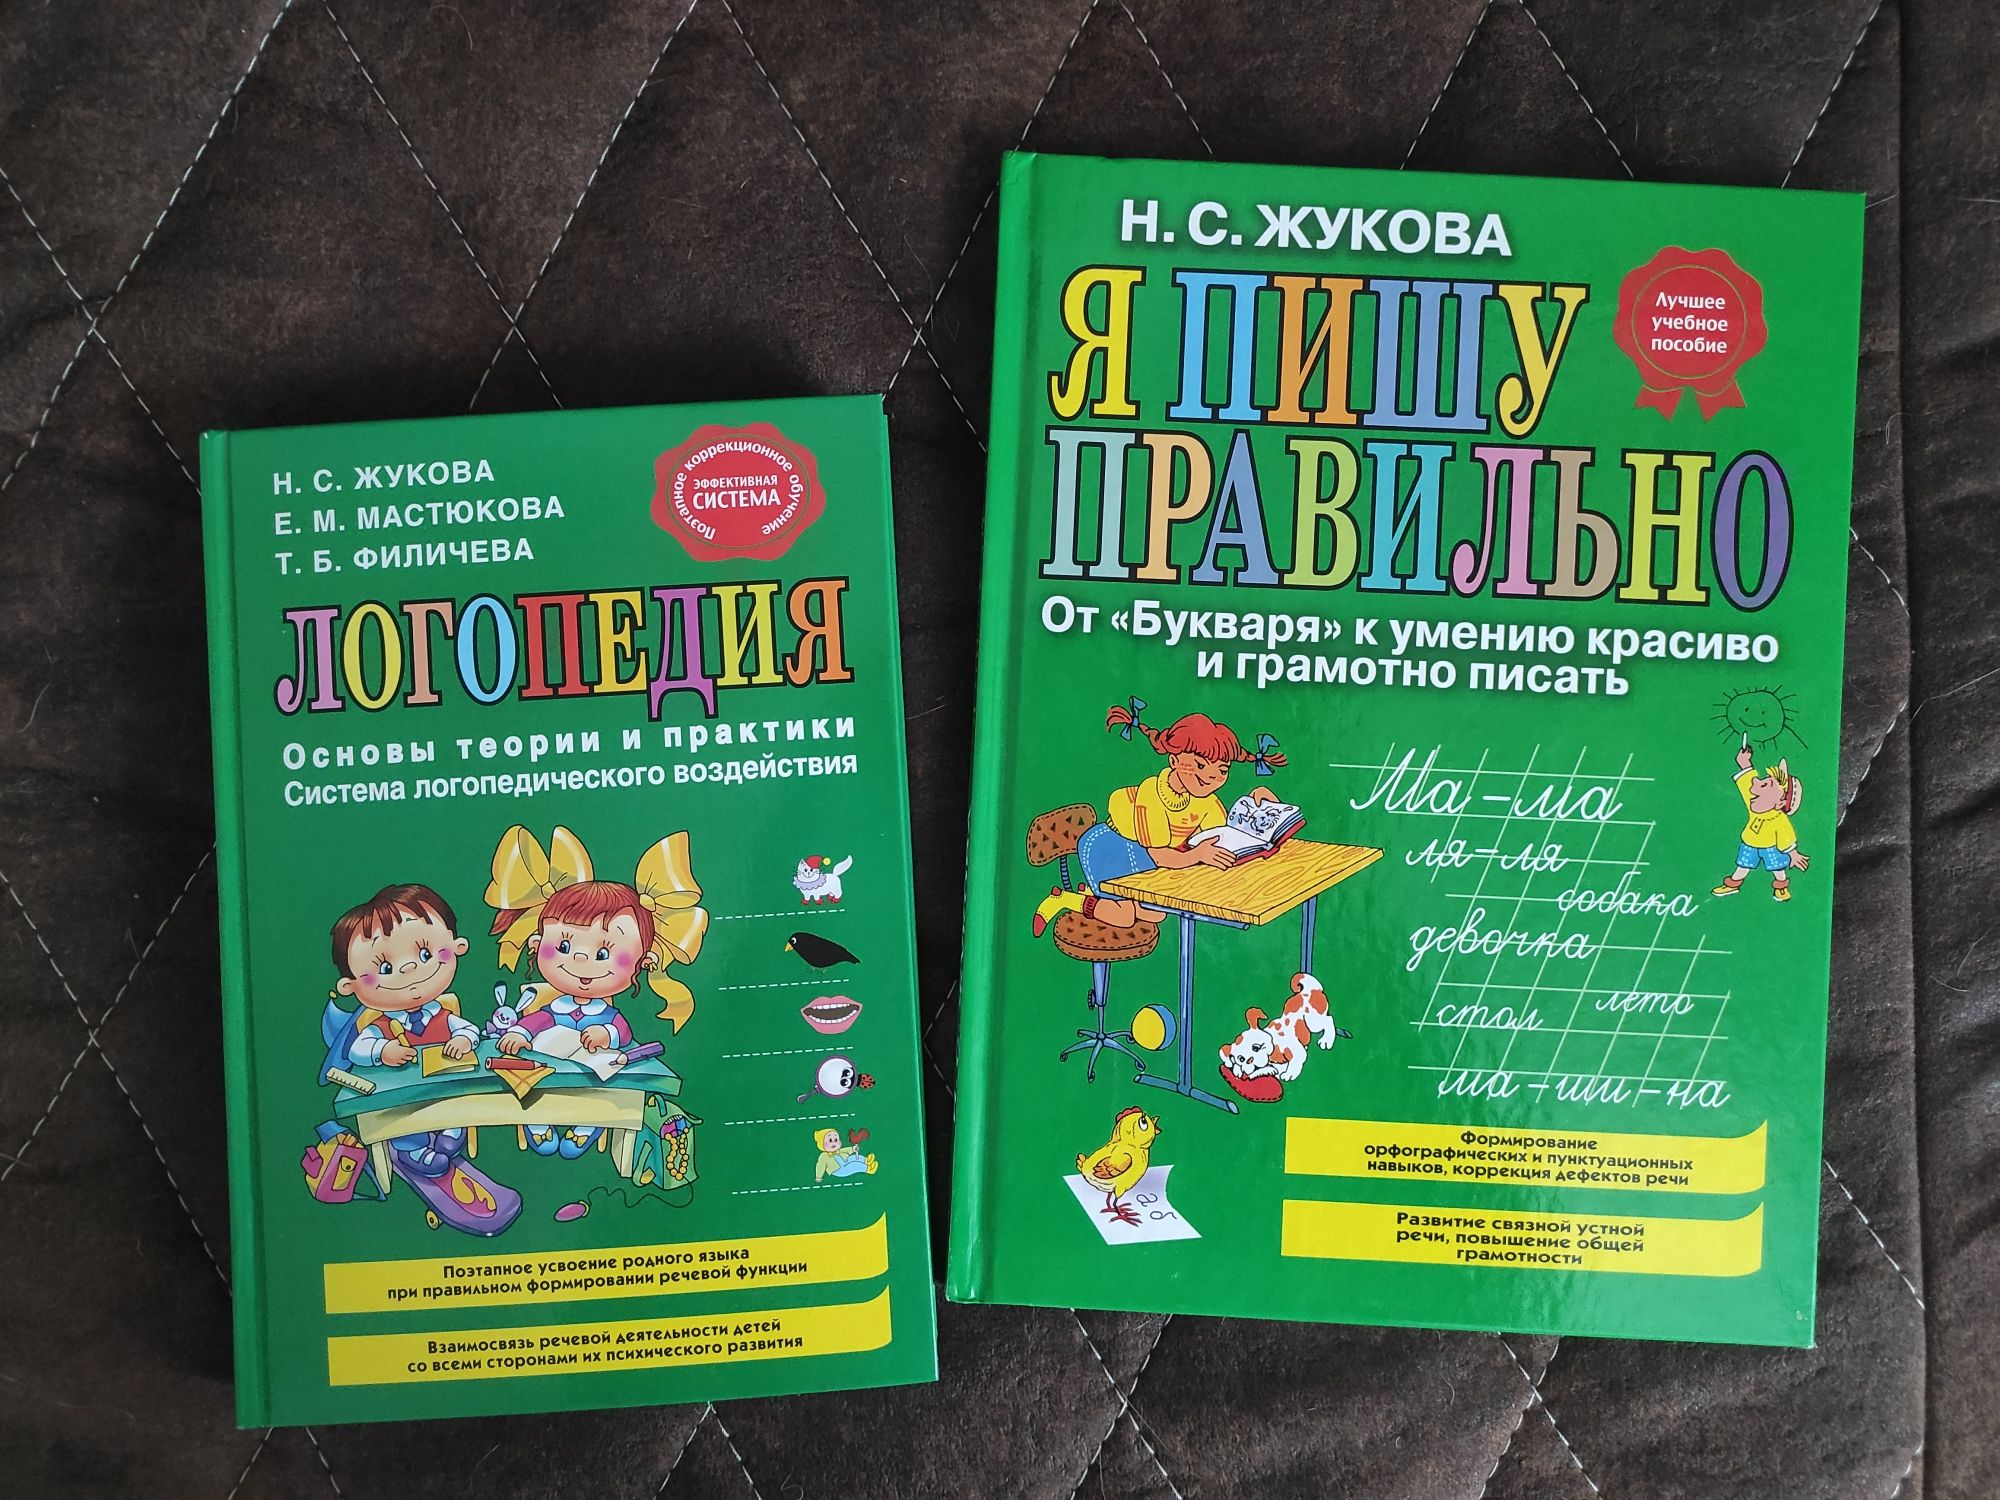 Книга Н.Жуковой "Логопедия"